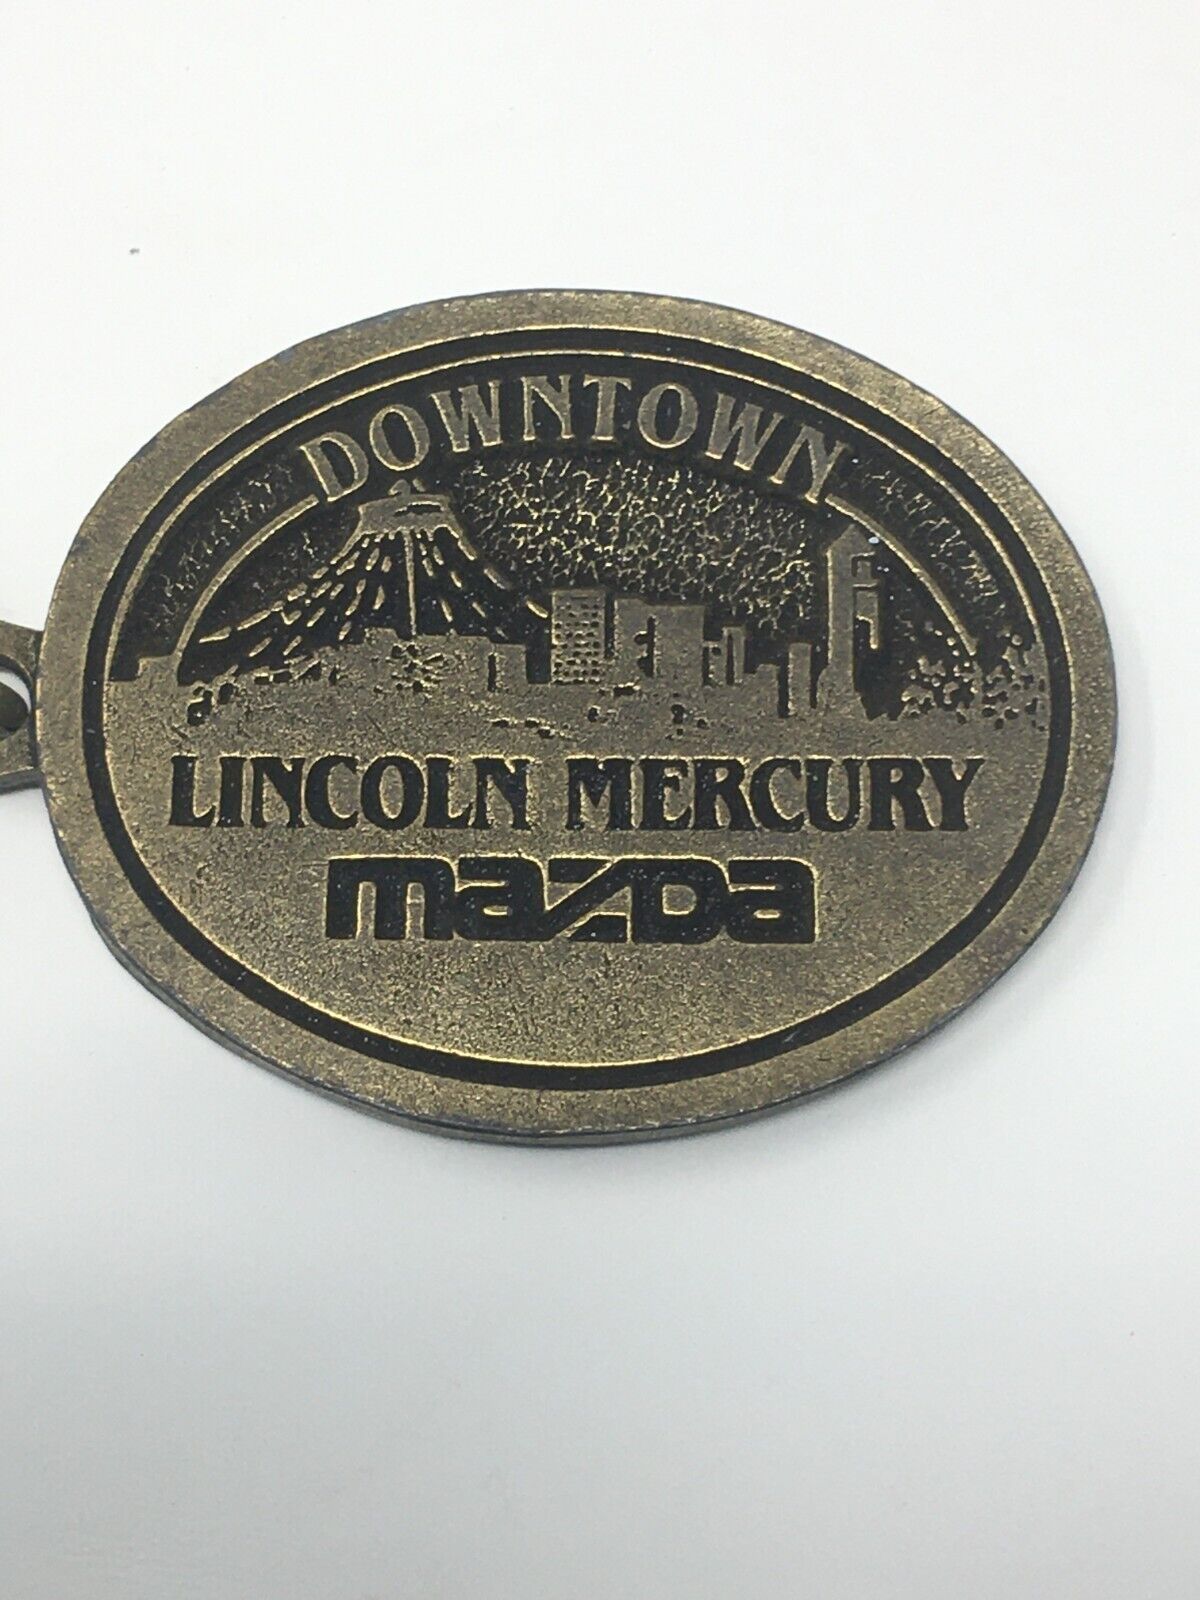 Spokane Washington Lincoln Mercury Mazda Keychain,WA Key RIng Accessory